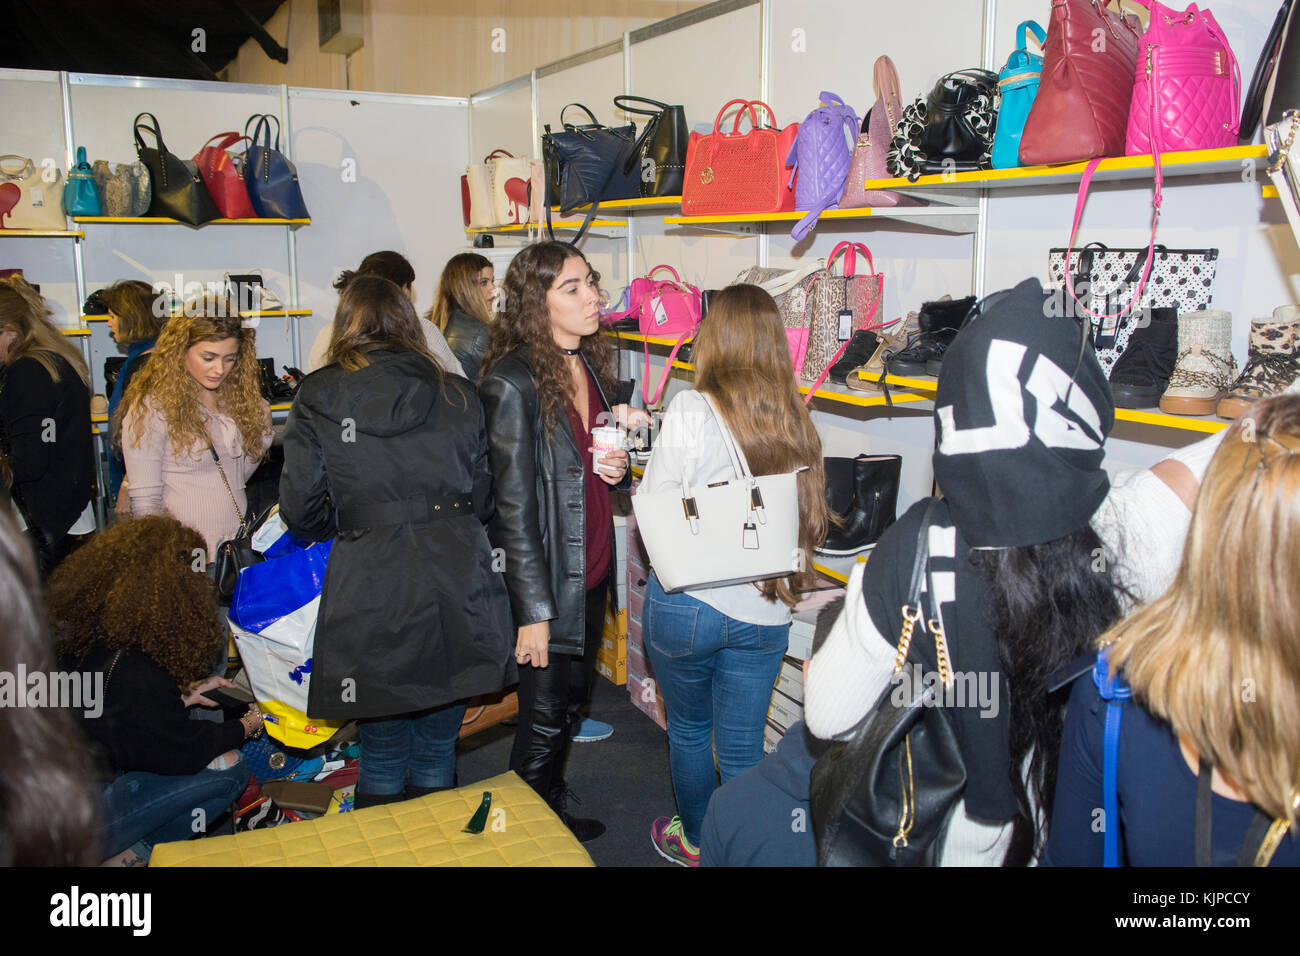 Biel, Beyrouth, Liban. 24 Nov, 2017. Les femmes à l'intérieur des sacs à main shopping le marché du Vendredi noir Beyrouth Liban Crédit : Mohamad Itani/Alamy Live News Banque D'Images